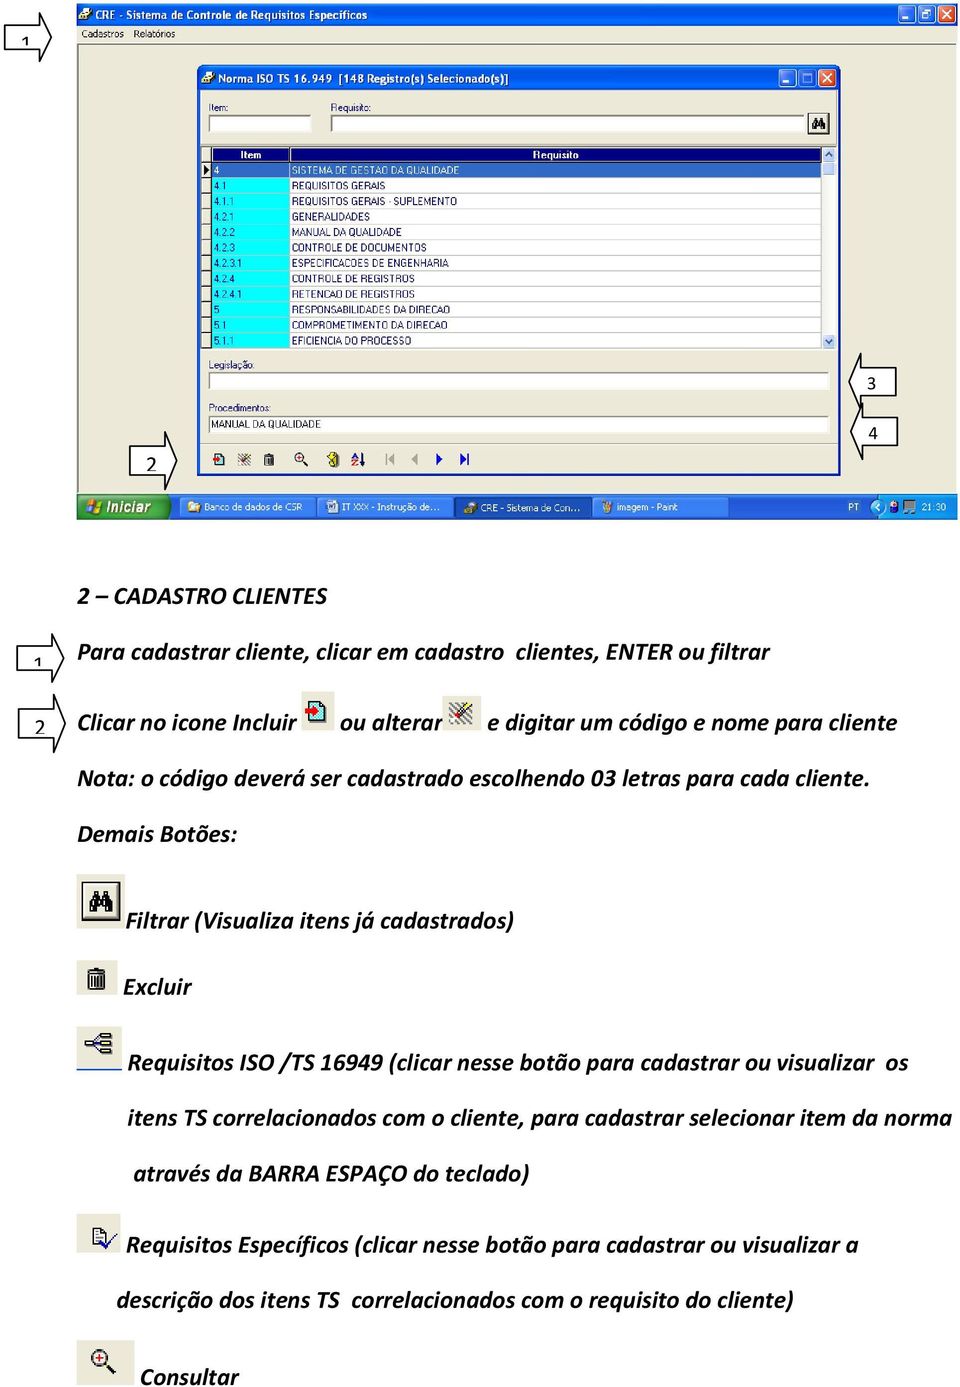 Demais Botões: Filtrar (Visualiza itens já cadastrados) Excluir Requisitos ISO /TS 16949 (clicar nesse botão para cadastrar ou visualizar os itens TS correlacionados